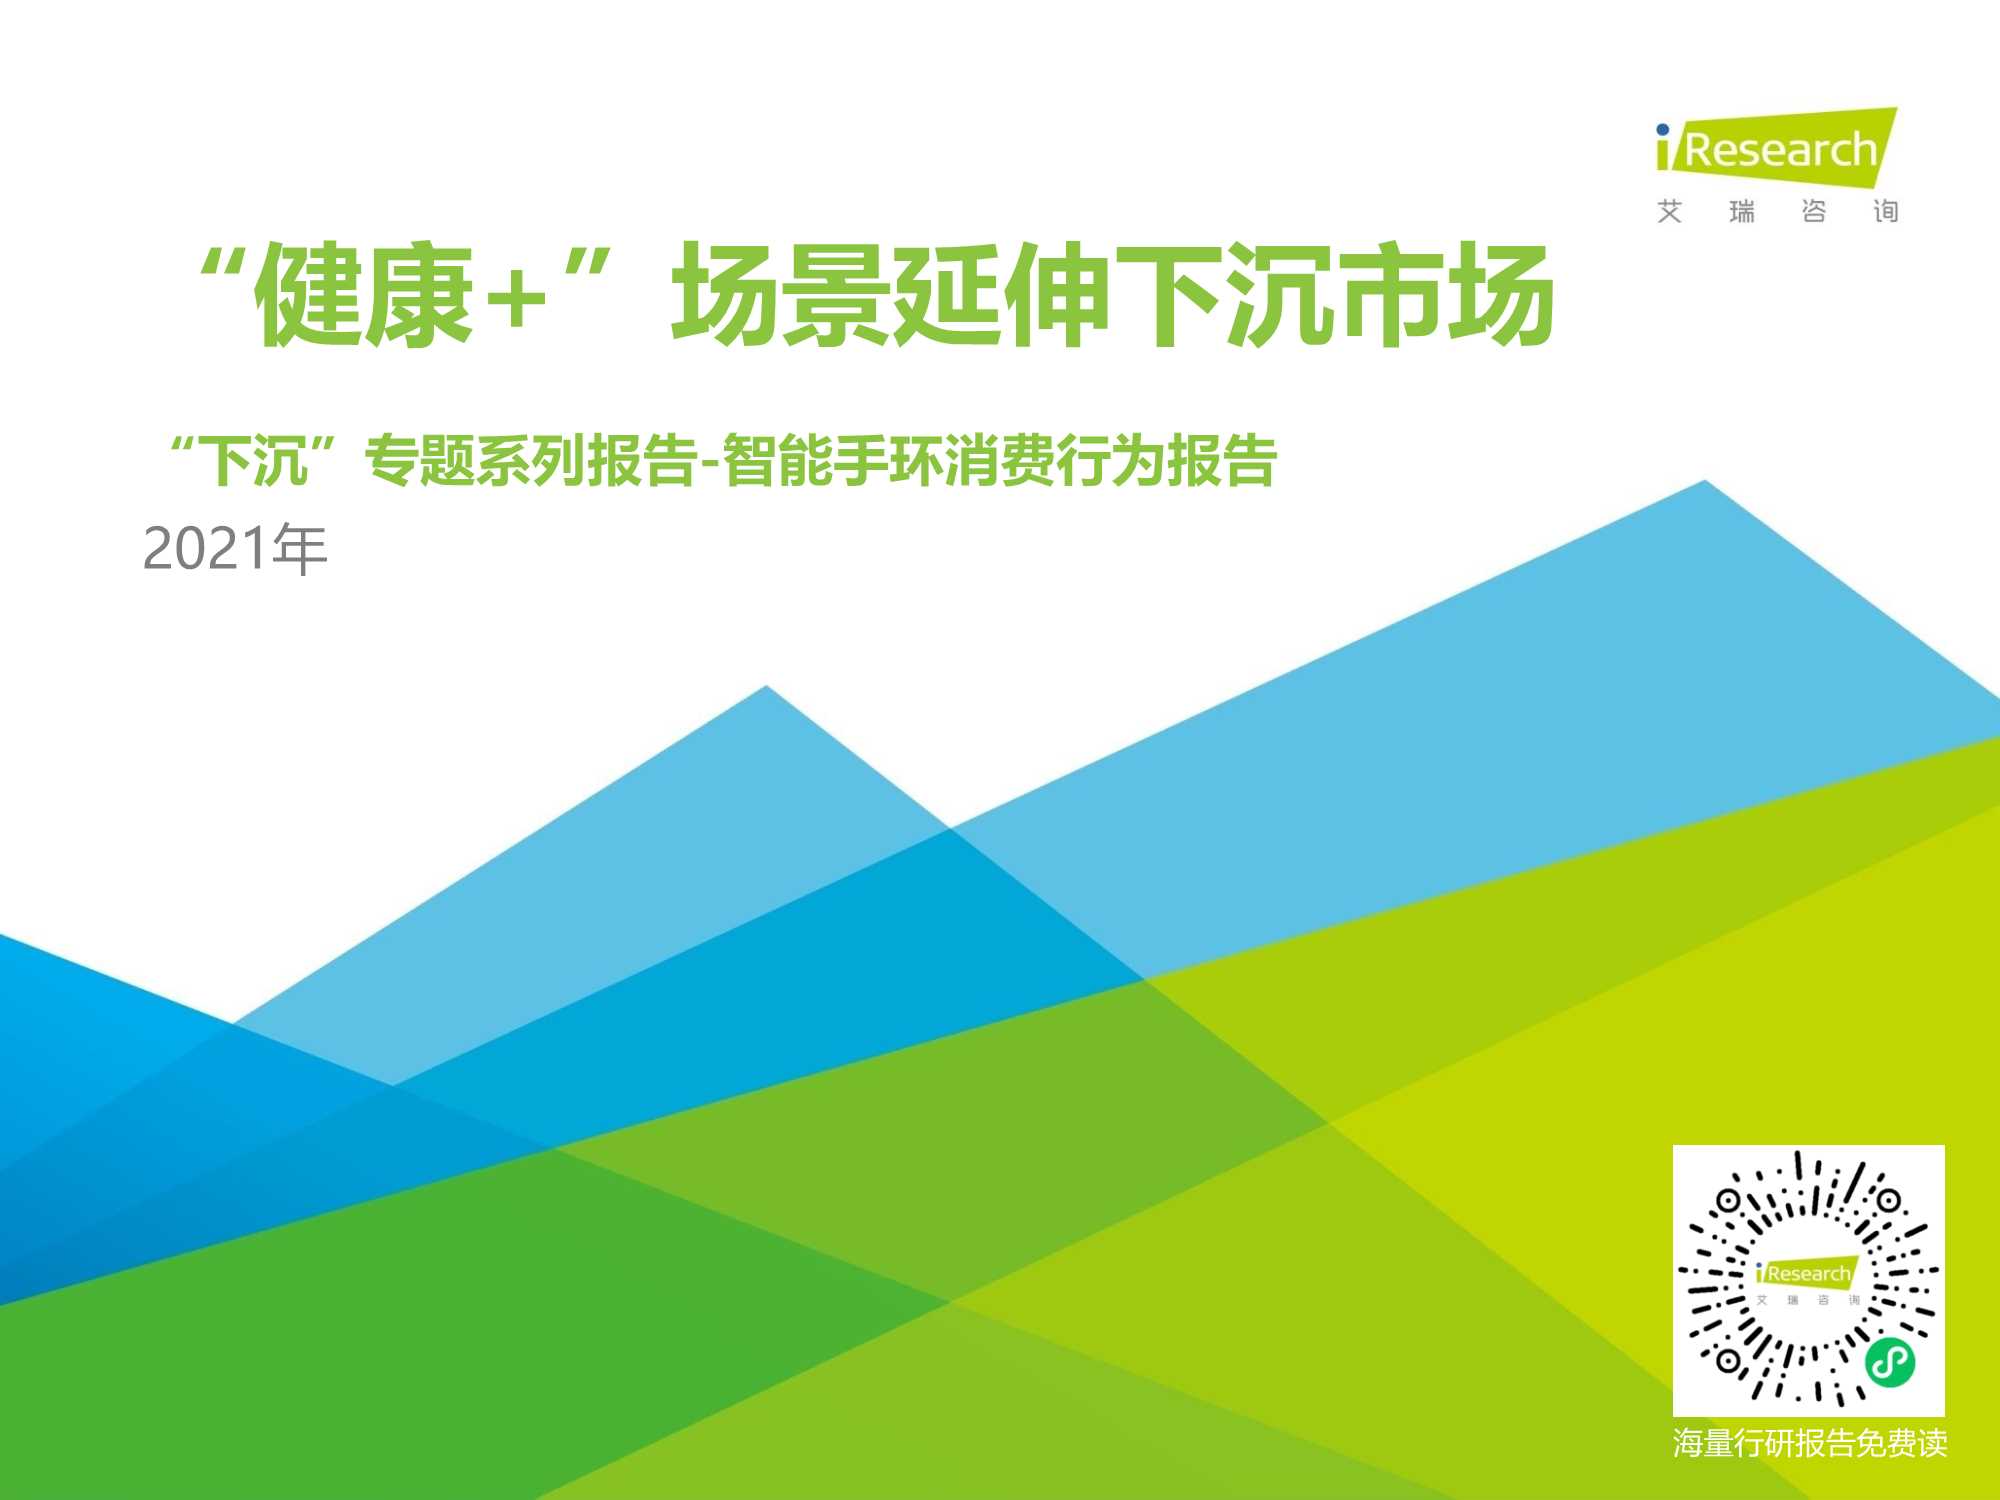 艾瑞咨询-健康 场景延伸下沉市场-2021年中国下沉市场智能手环消费行为报告-2021.05-24页